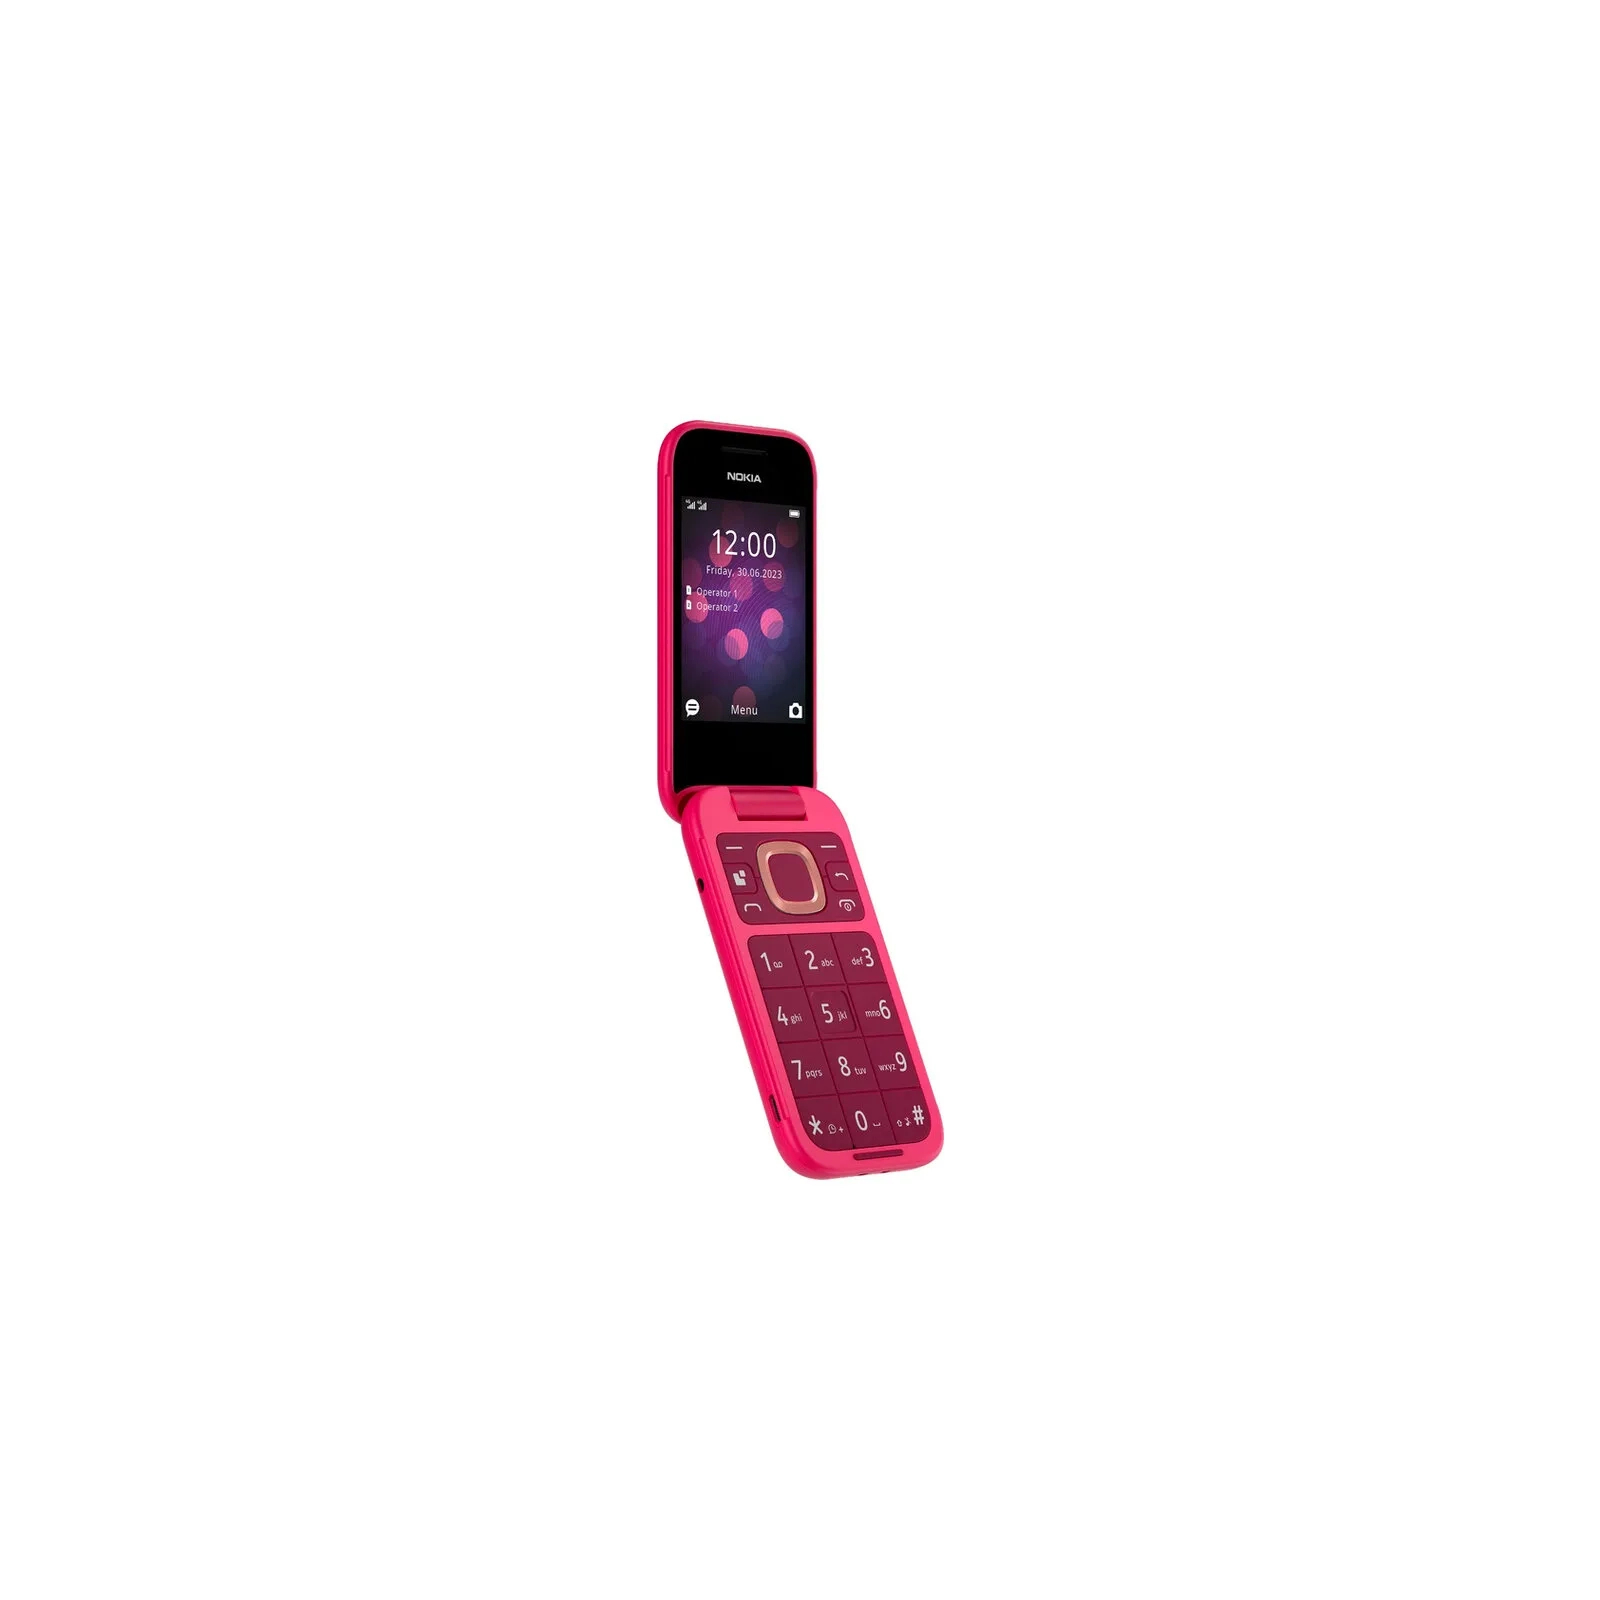 Мобильный телефон Nokia 2660 Flip Green изображение 10